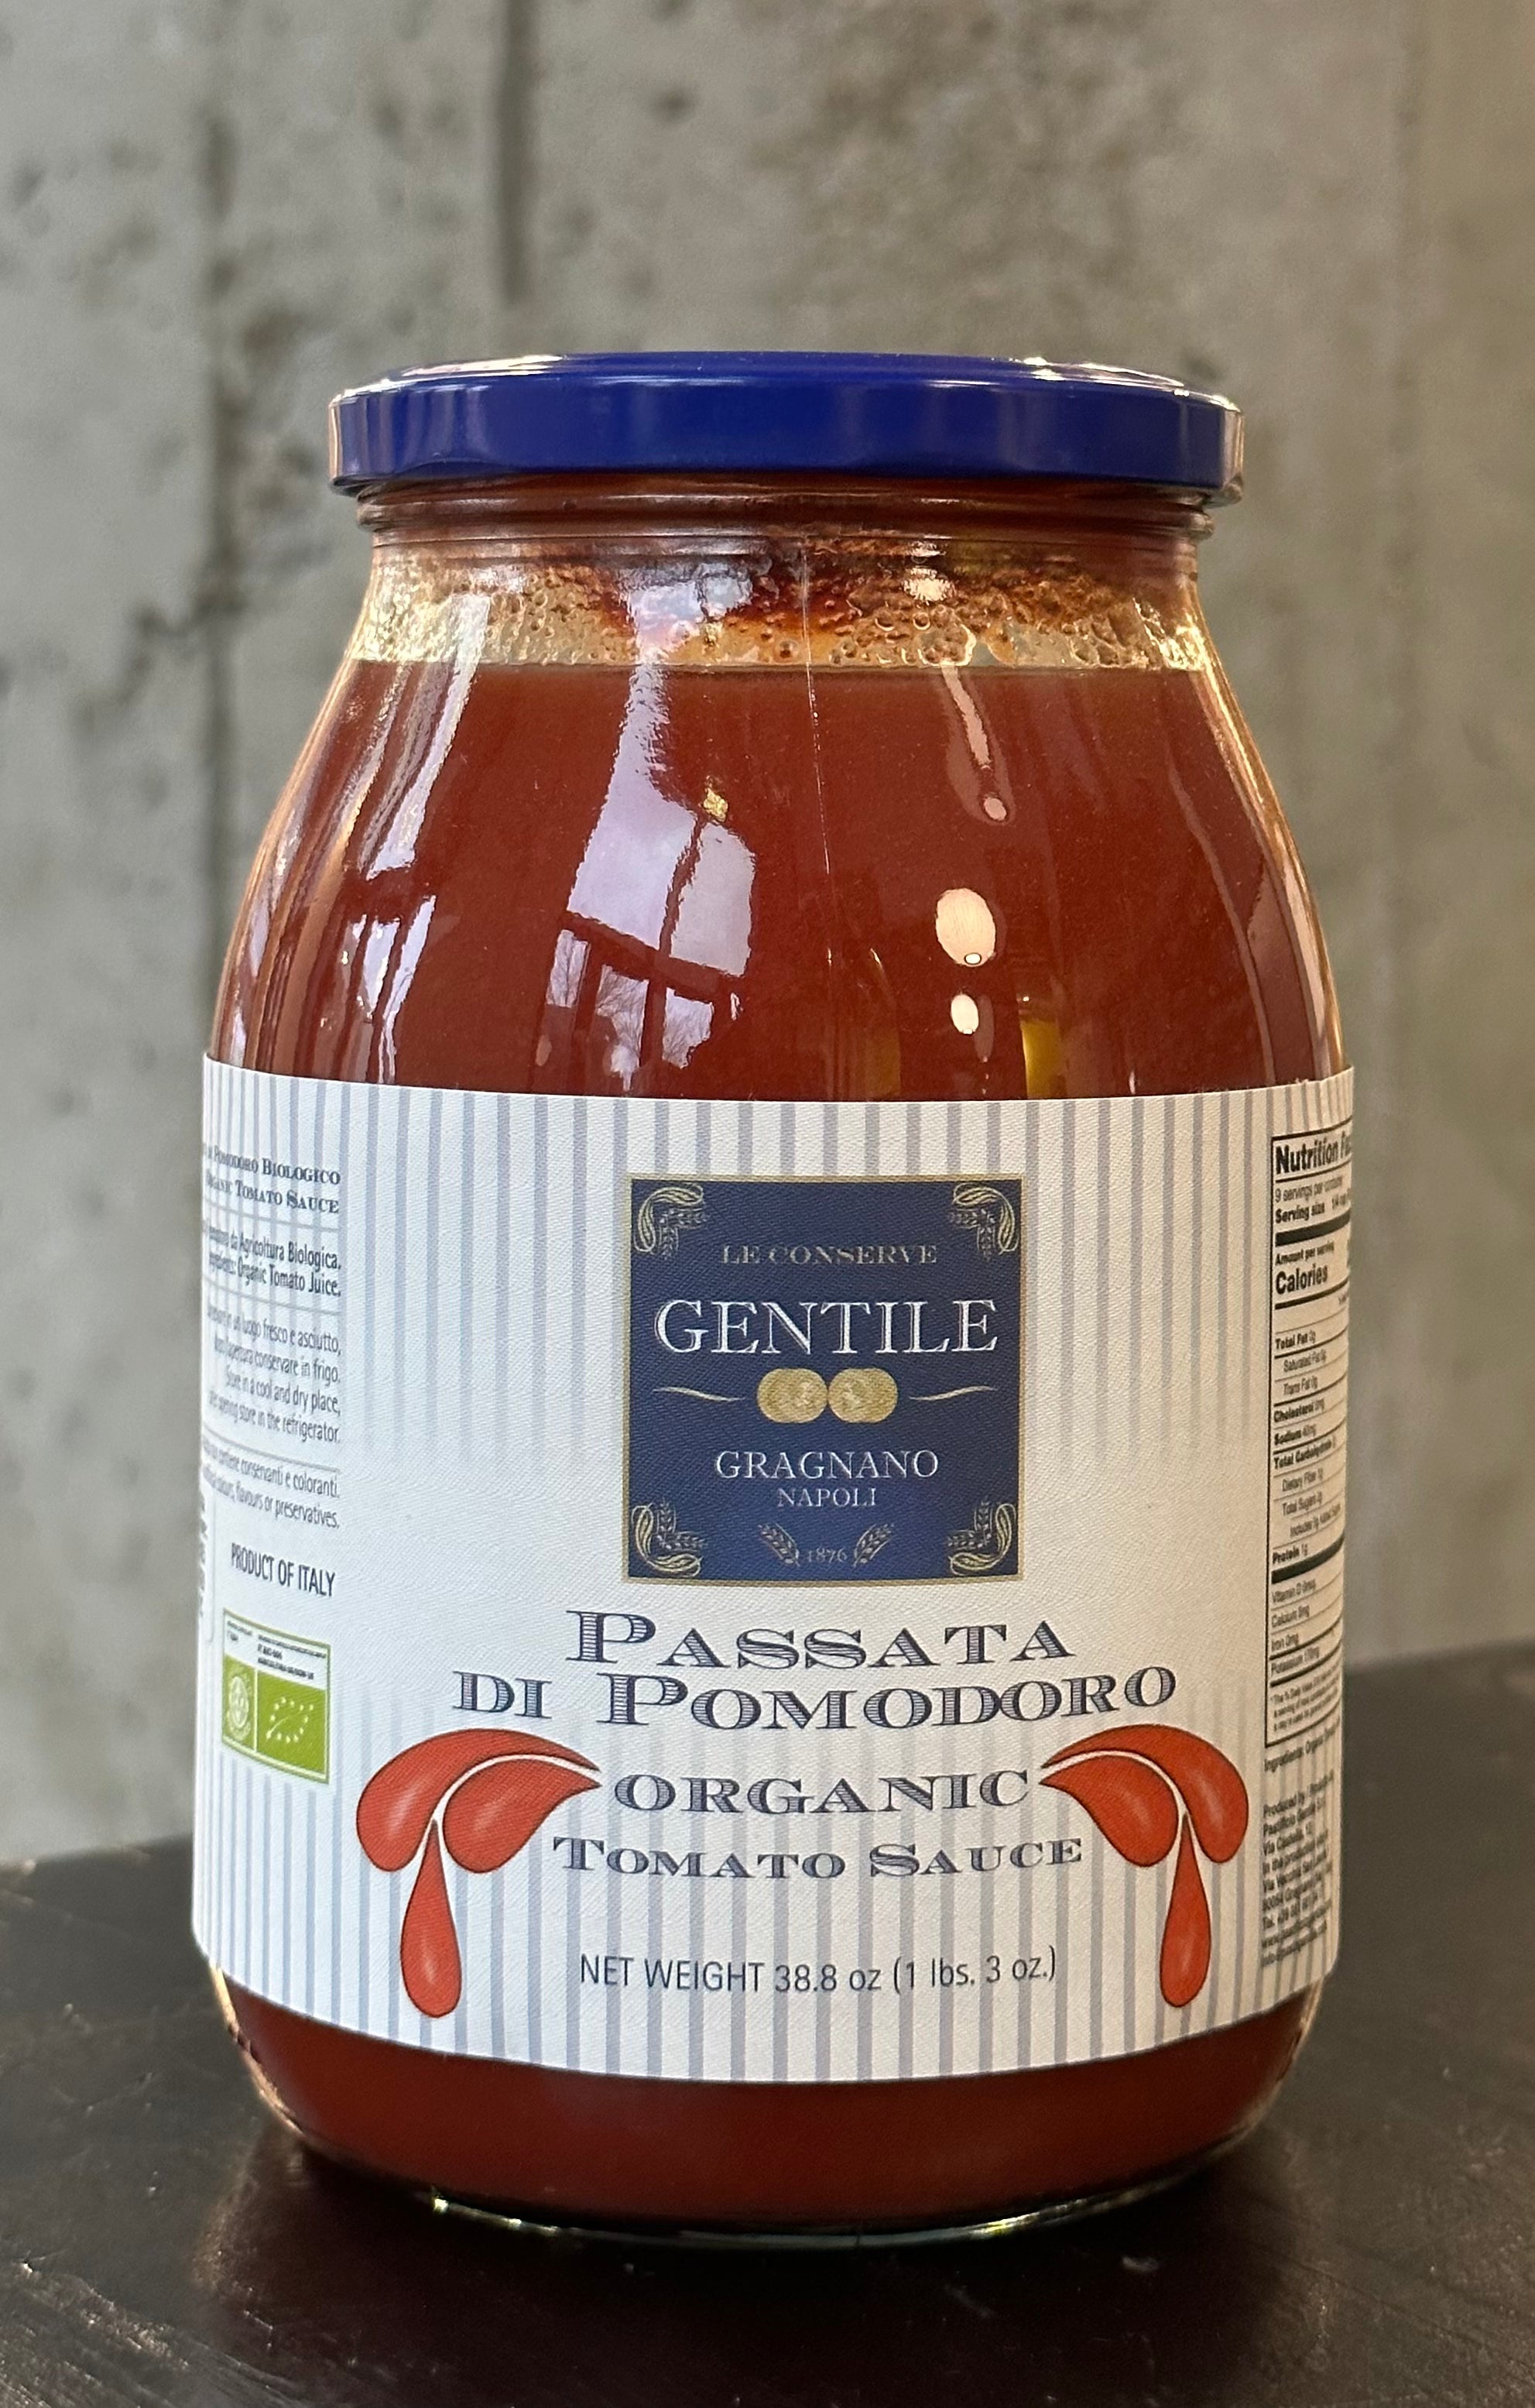 Gentile "Passata di Pomodoro" Organic Tomato Sauce